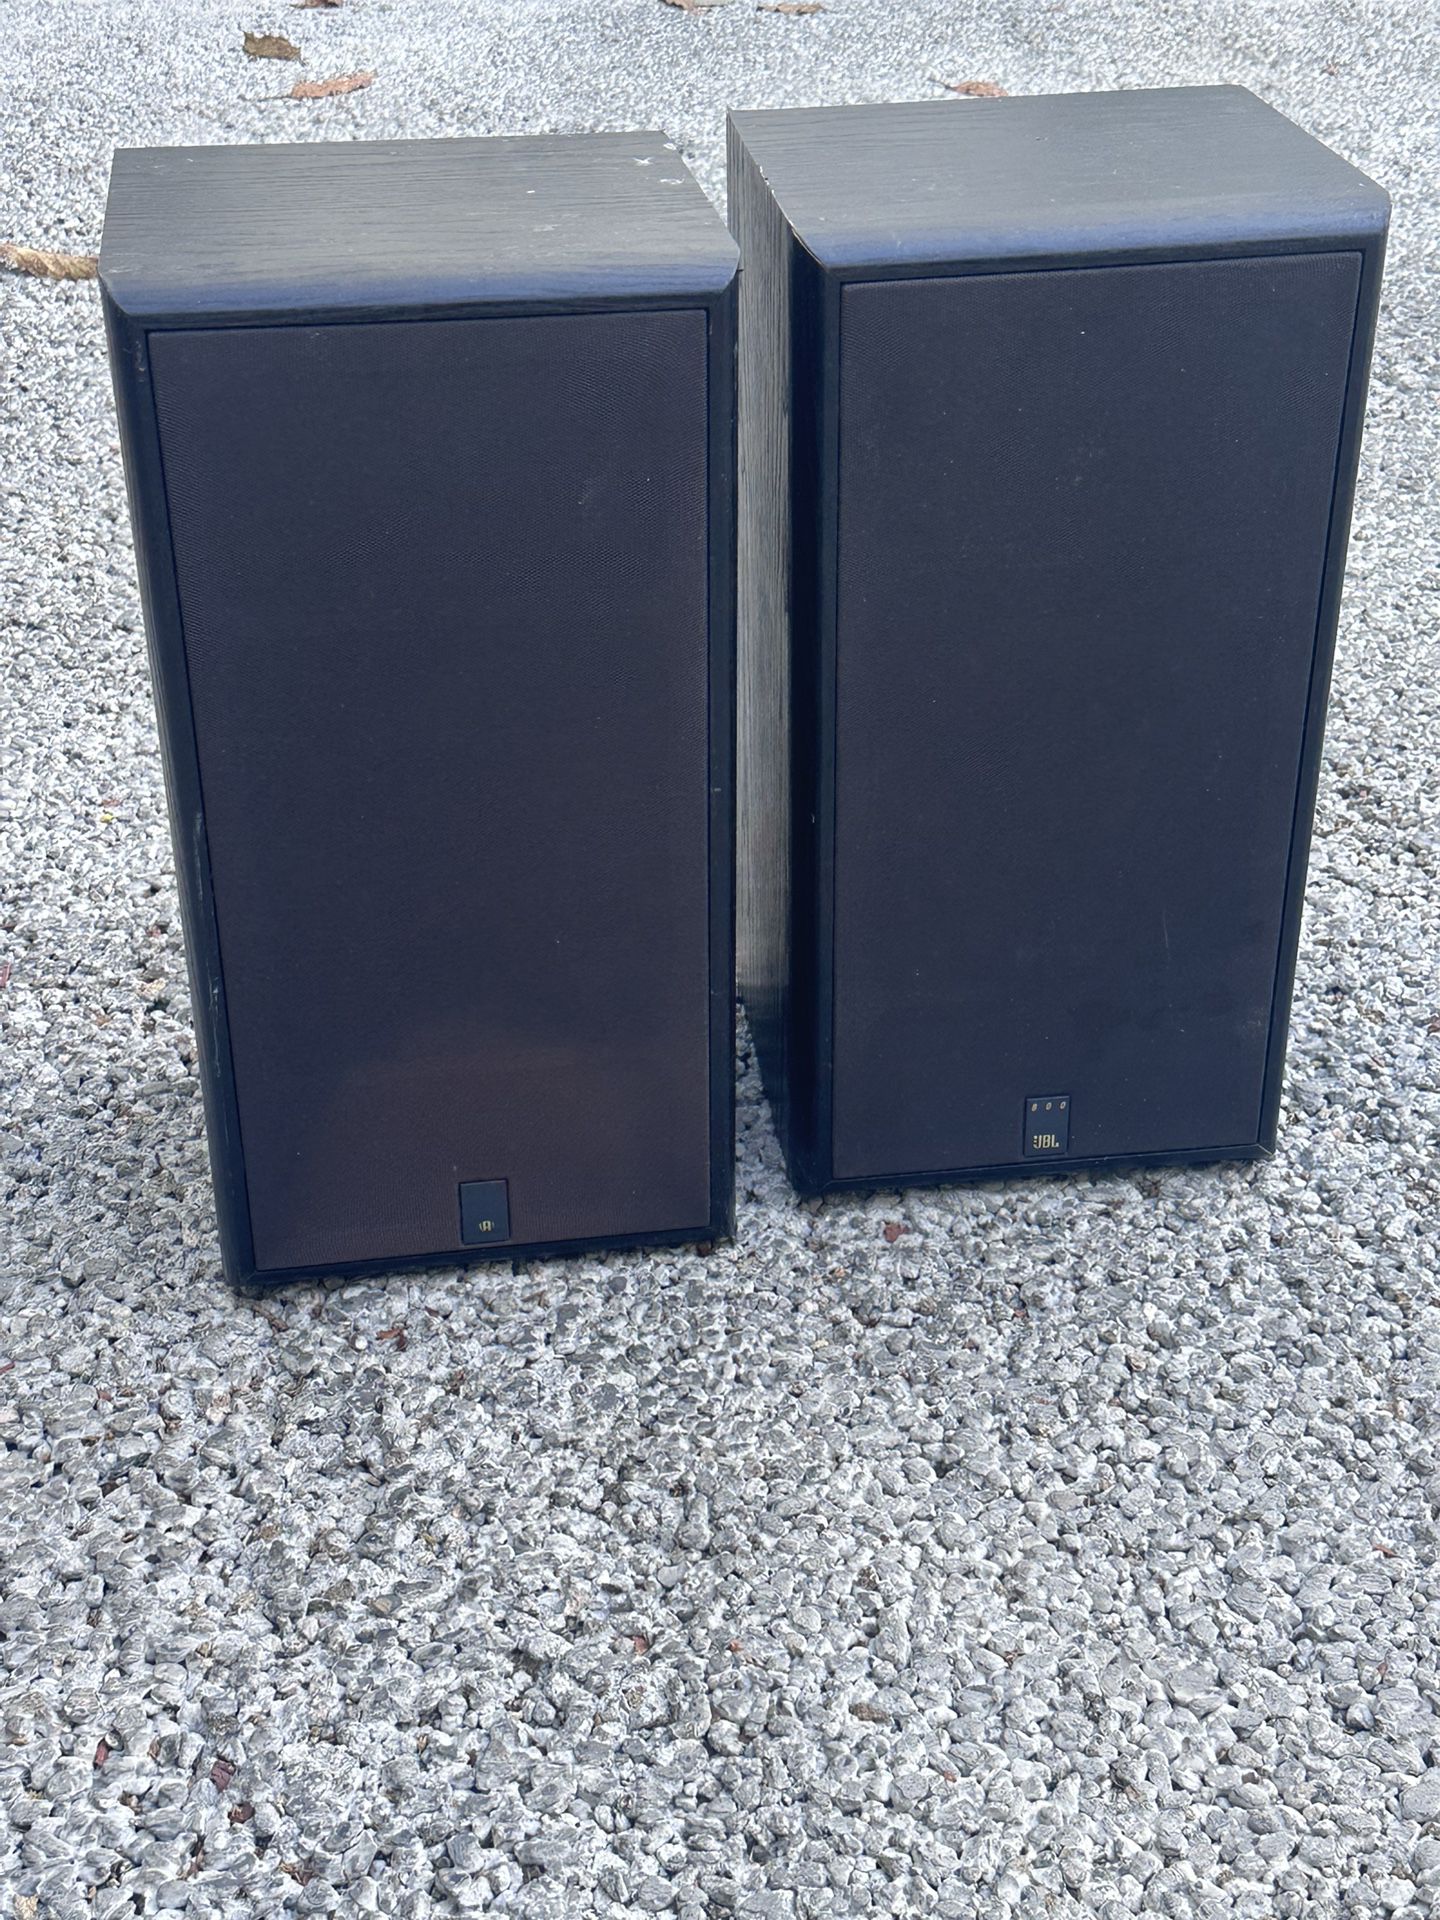 JBL 800 Hi-Fi Speakers set